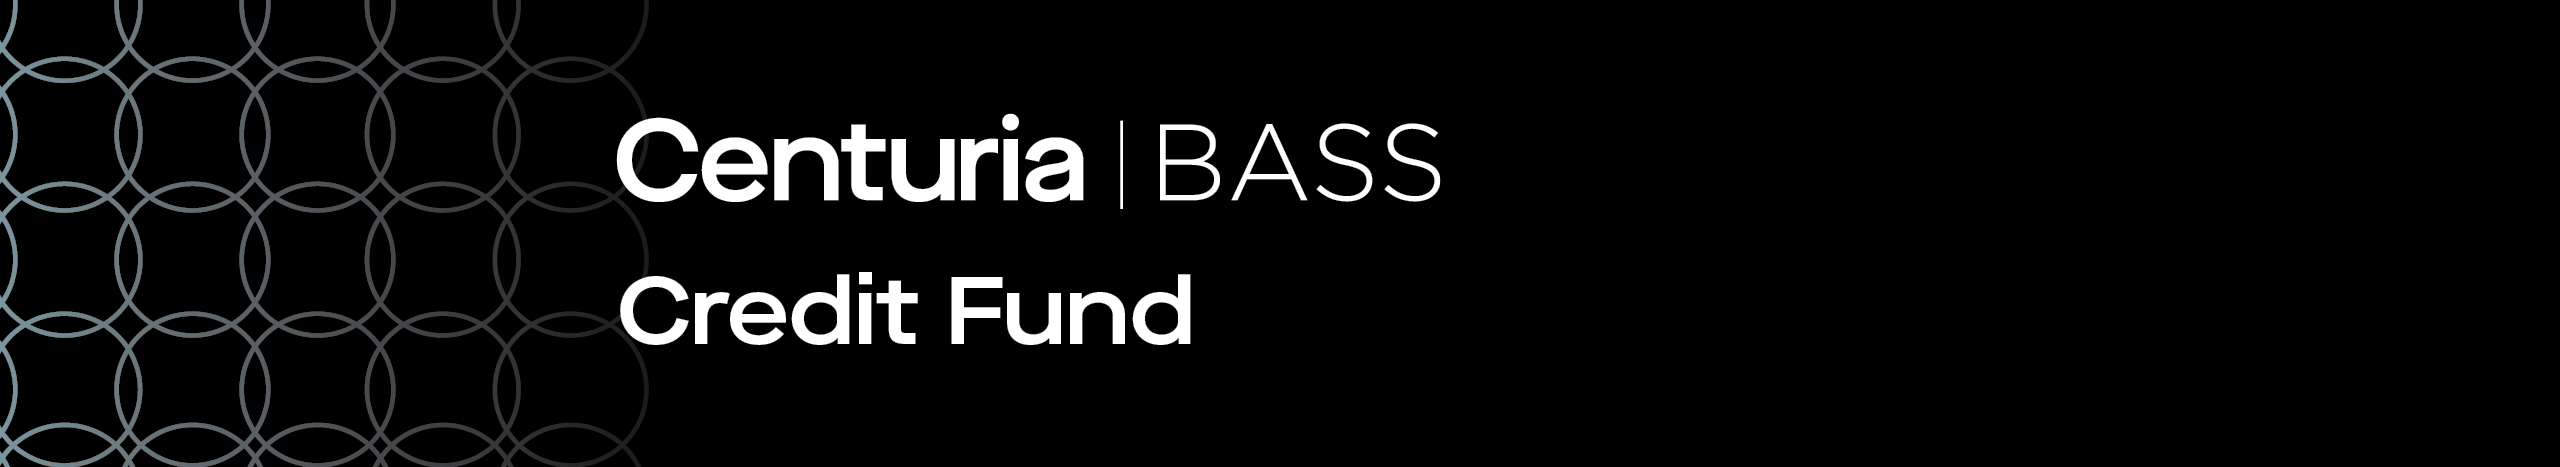 Centuria Bass Credit Fund